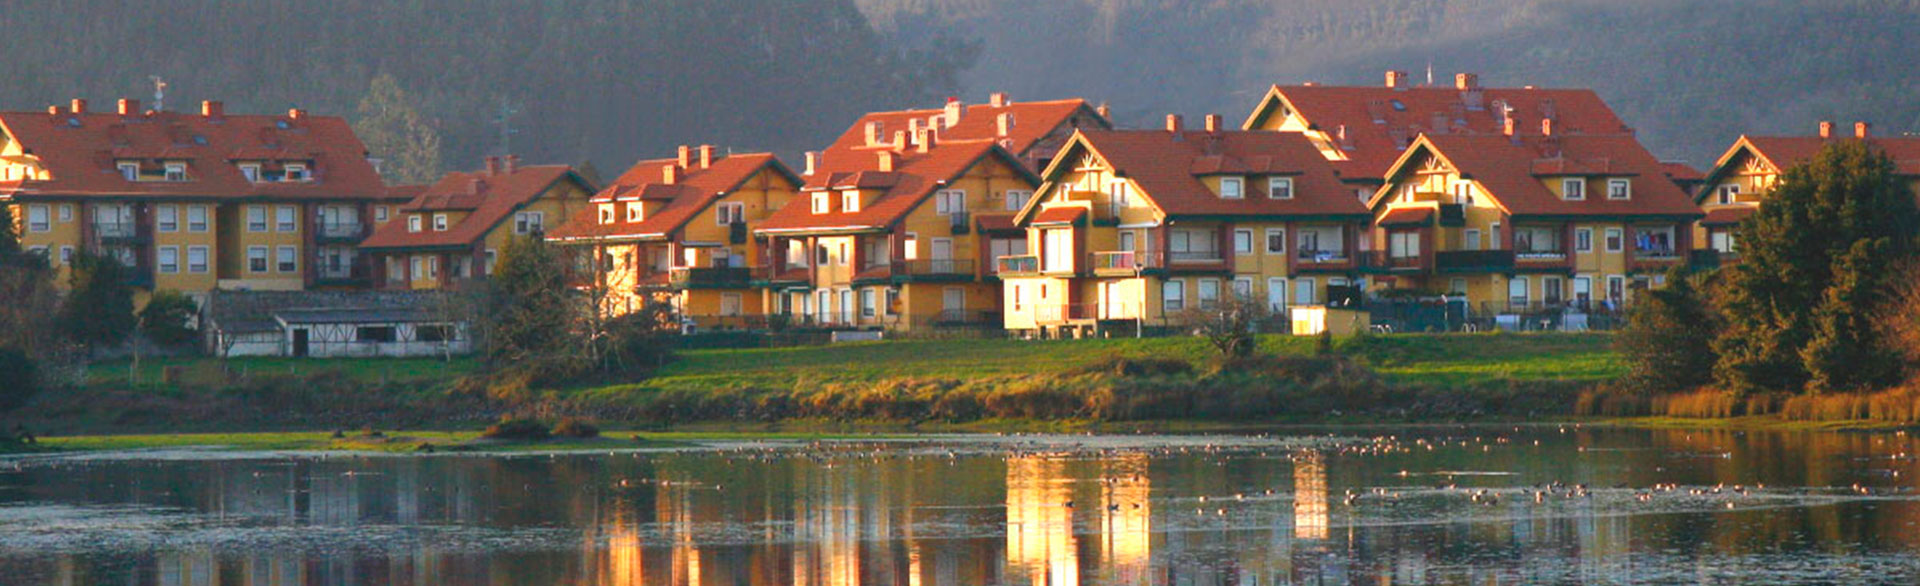 Inmobiliaria Costa Ris, alquiler pisos Cantabria, es una agencia inmobiliaria en Cantabria, que presta sus servicios de intermediación en la compra-venta de inmuebles. Inmobiliaria Costa Ris.